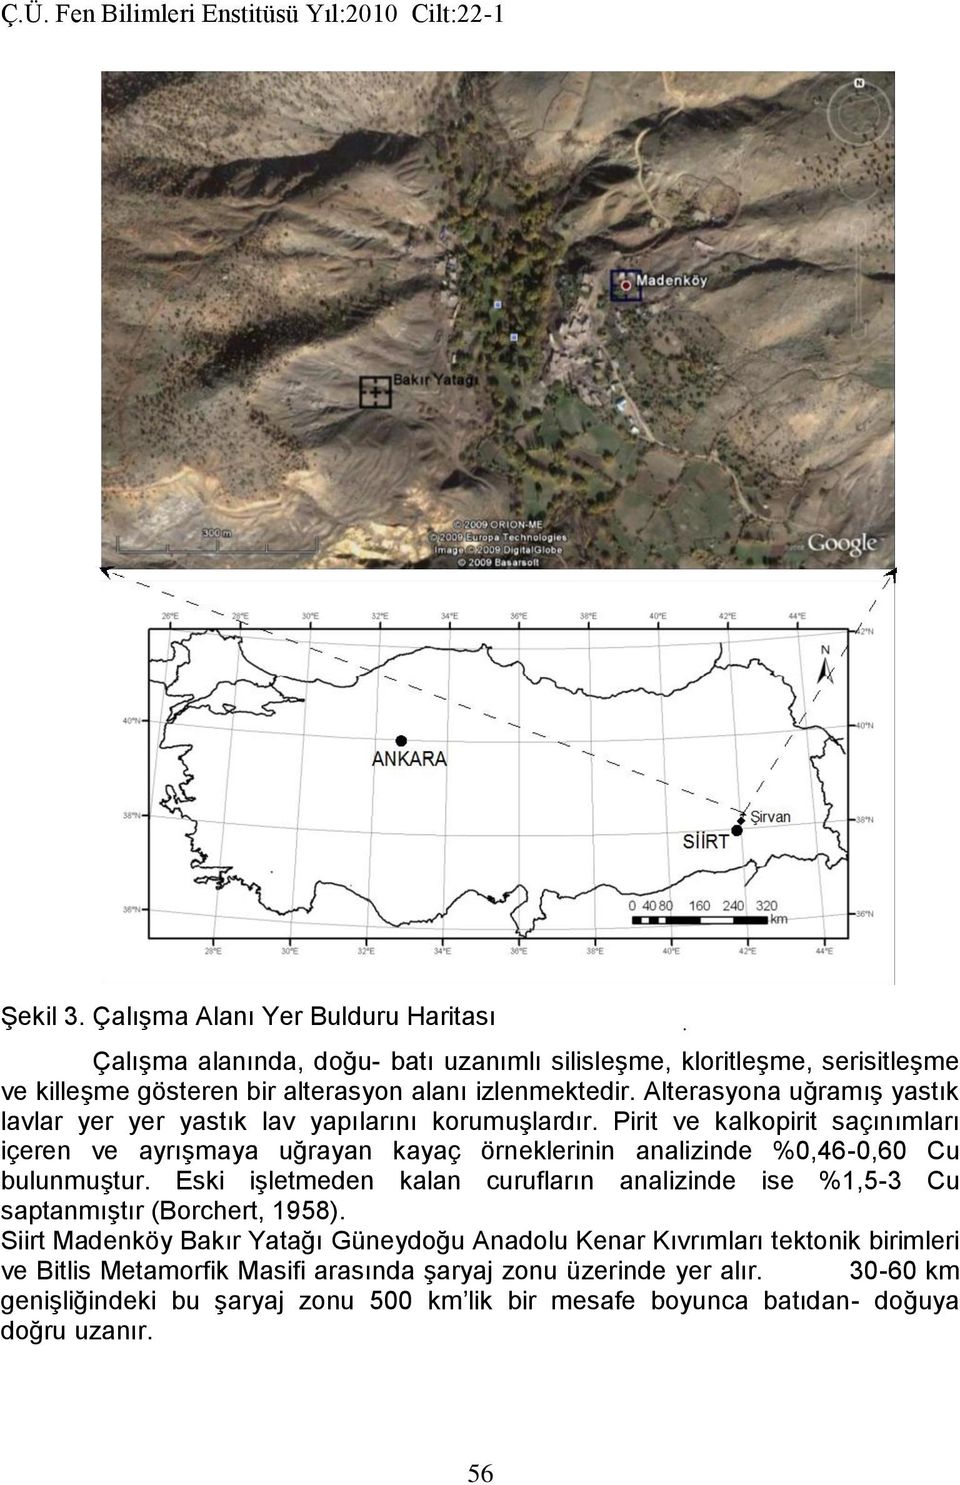 Pirit ve kalkopirit saçınımları içeren ve ayrışmaya uğrayan kayaç örneklerinin analizinde %0,46-0,60 Cu bulunmuştur.